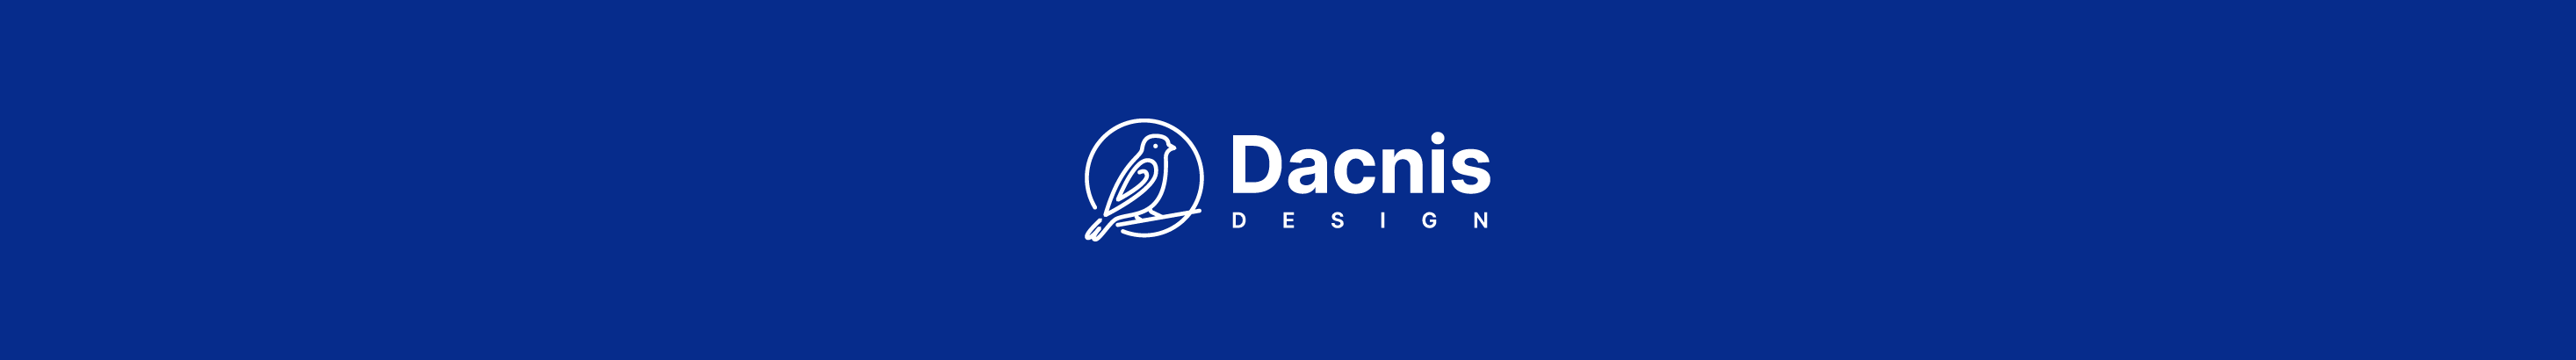 Viren Amrutiya Dacnis Design's profile banner